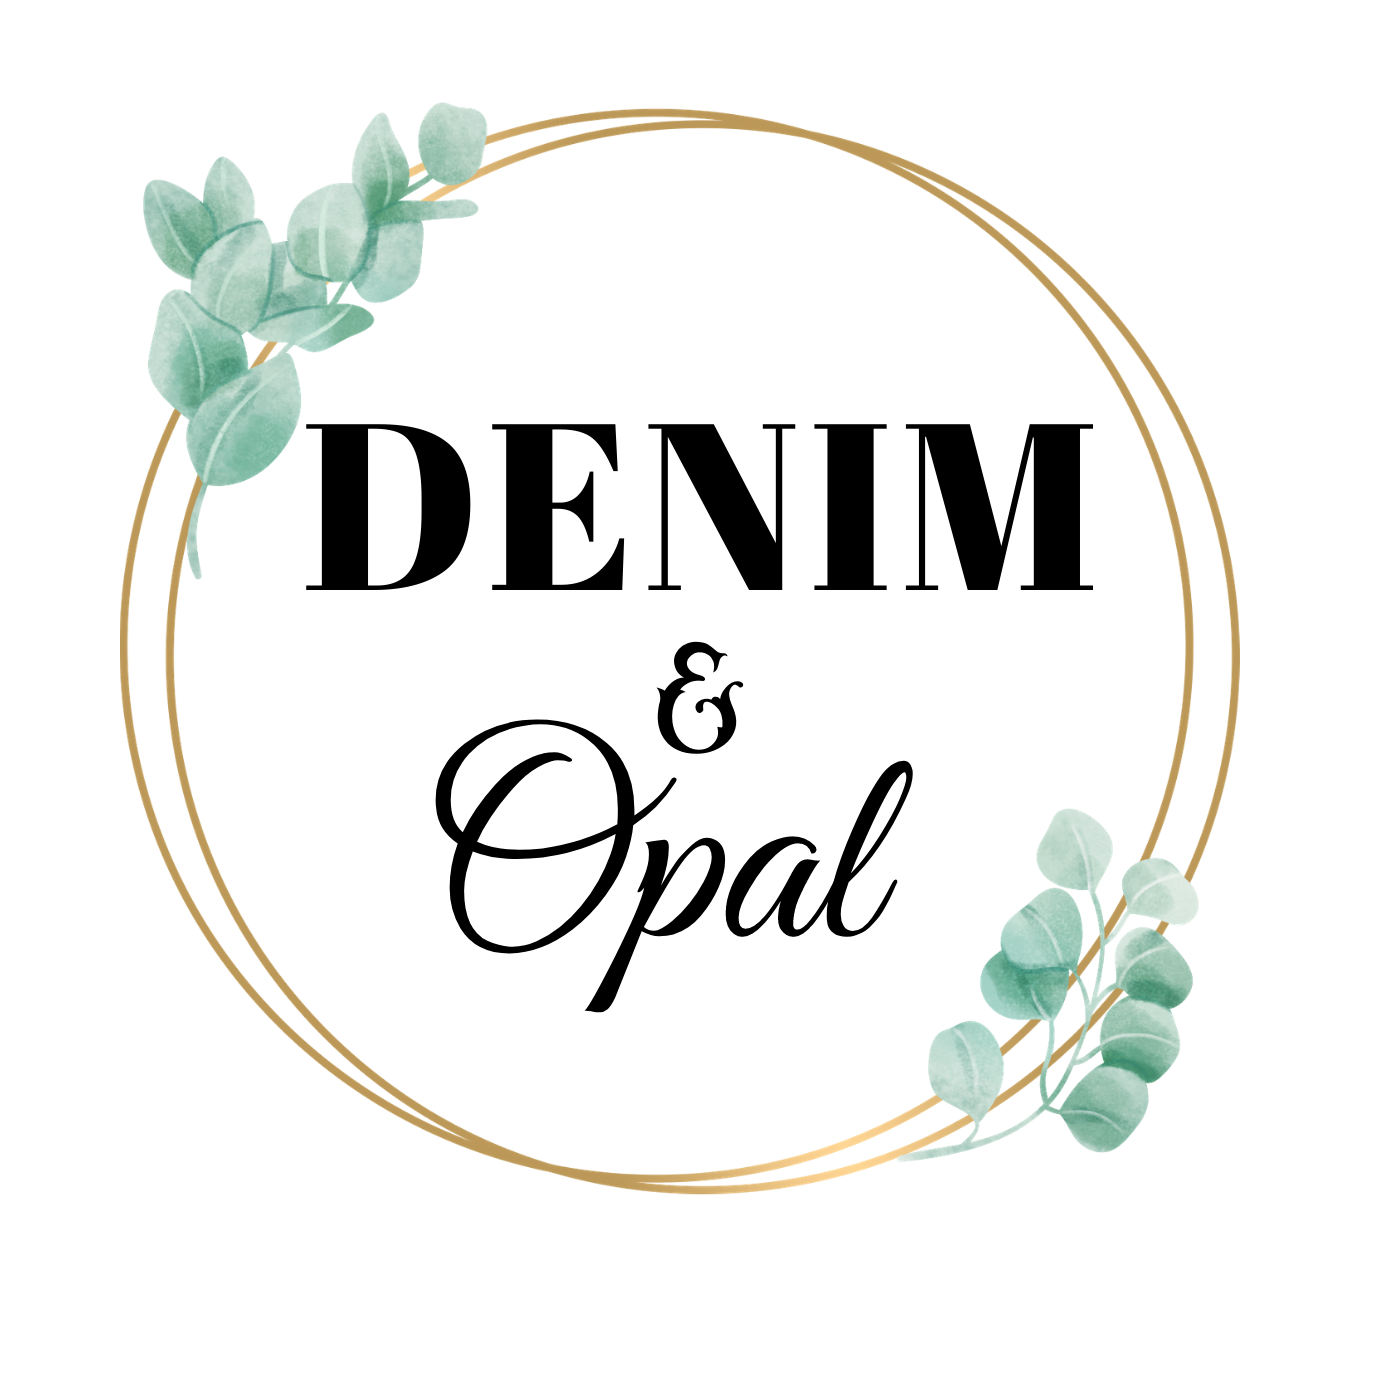 Denim & Opal